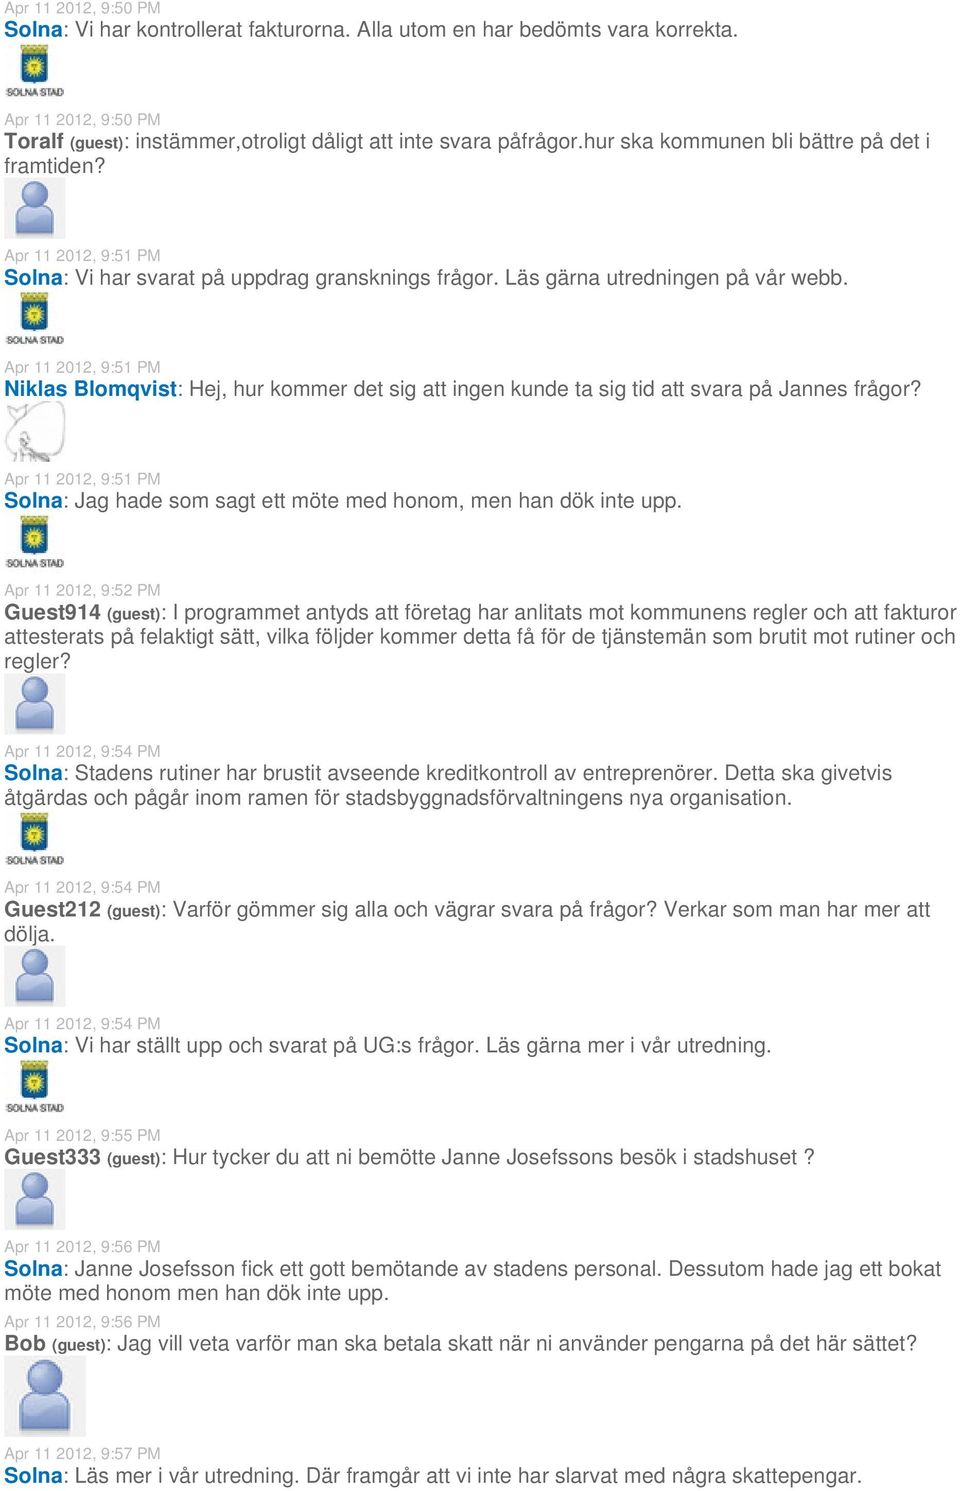 Apr 11 2012, 9:51 PM Niklas Blomqvist: Hej, hur kommer det sig att ingen kunde ta sig tid att svara på Jannes frågor?